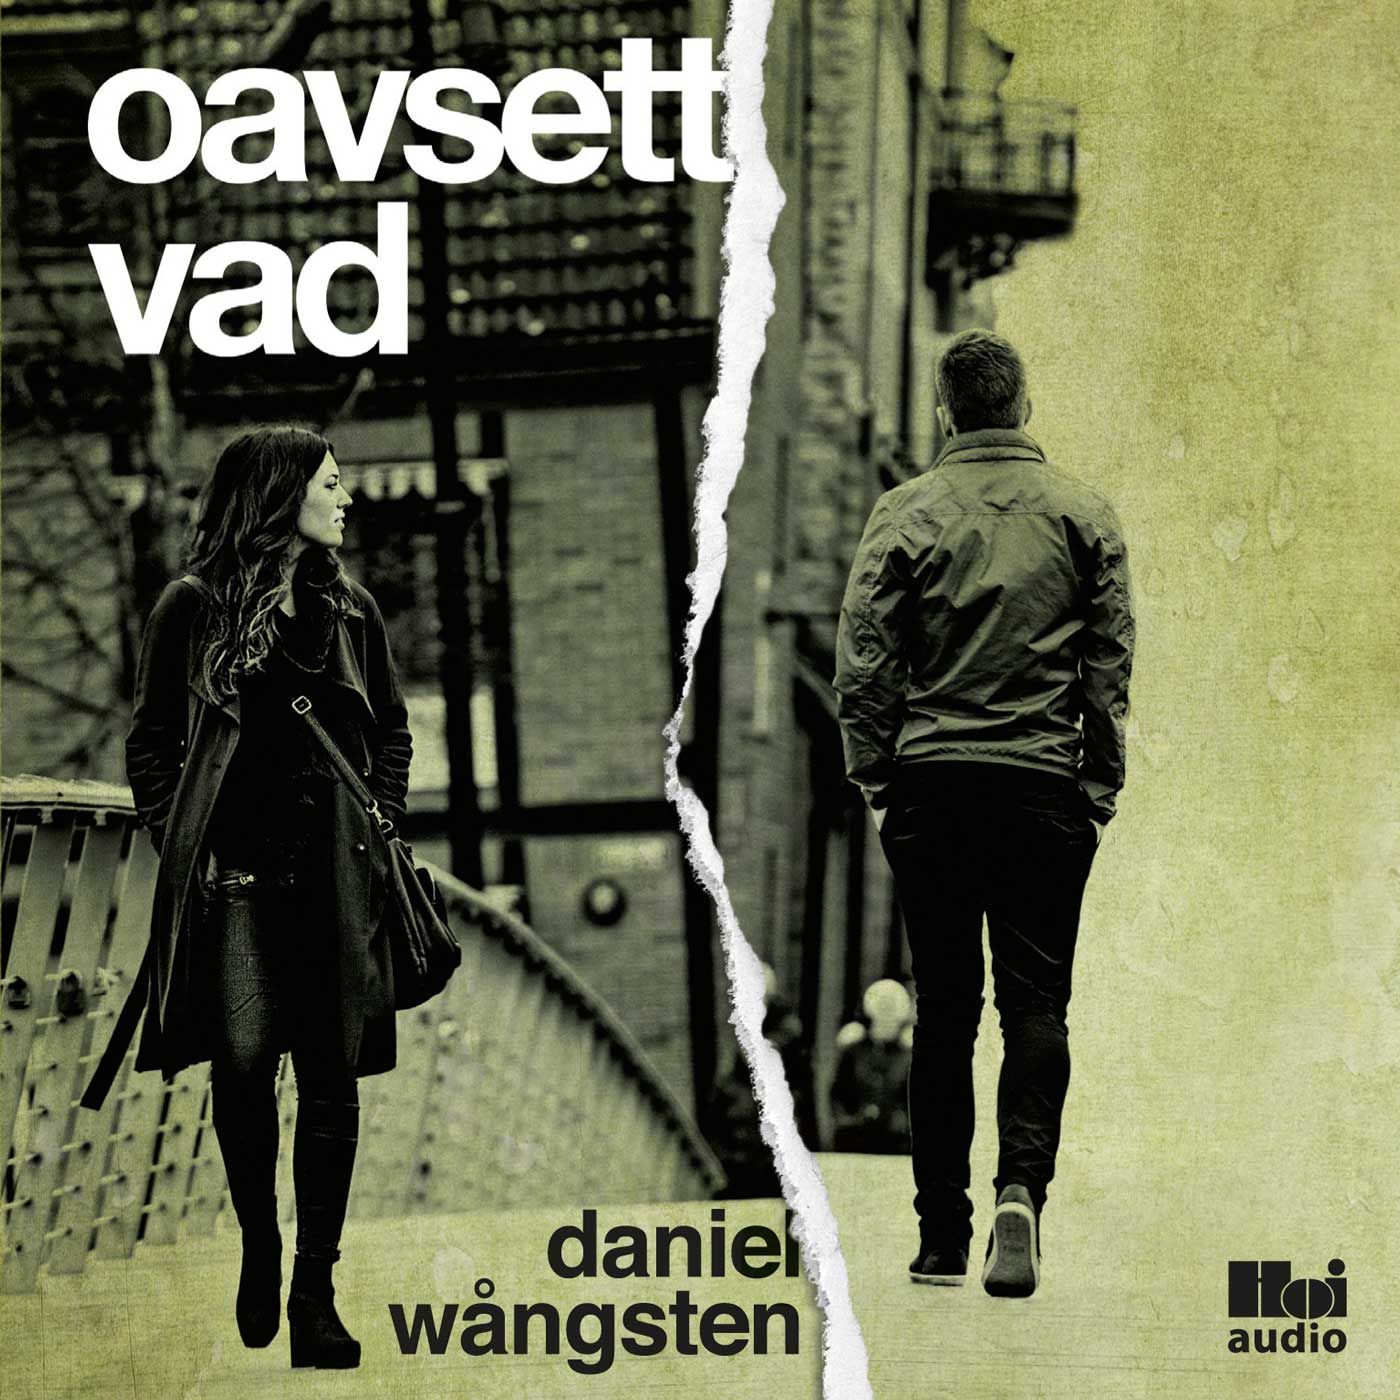 Oavsett vad, audiobook by Daniel Wångsten